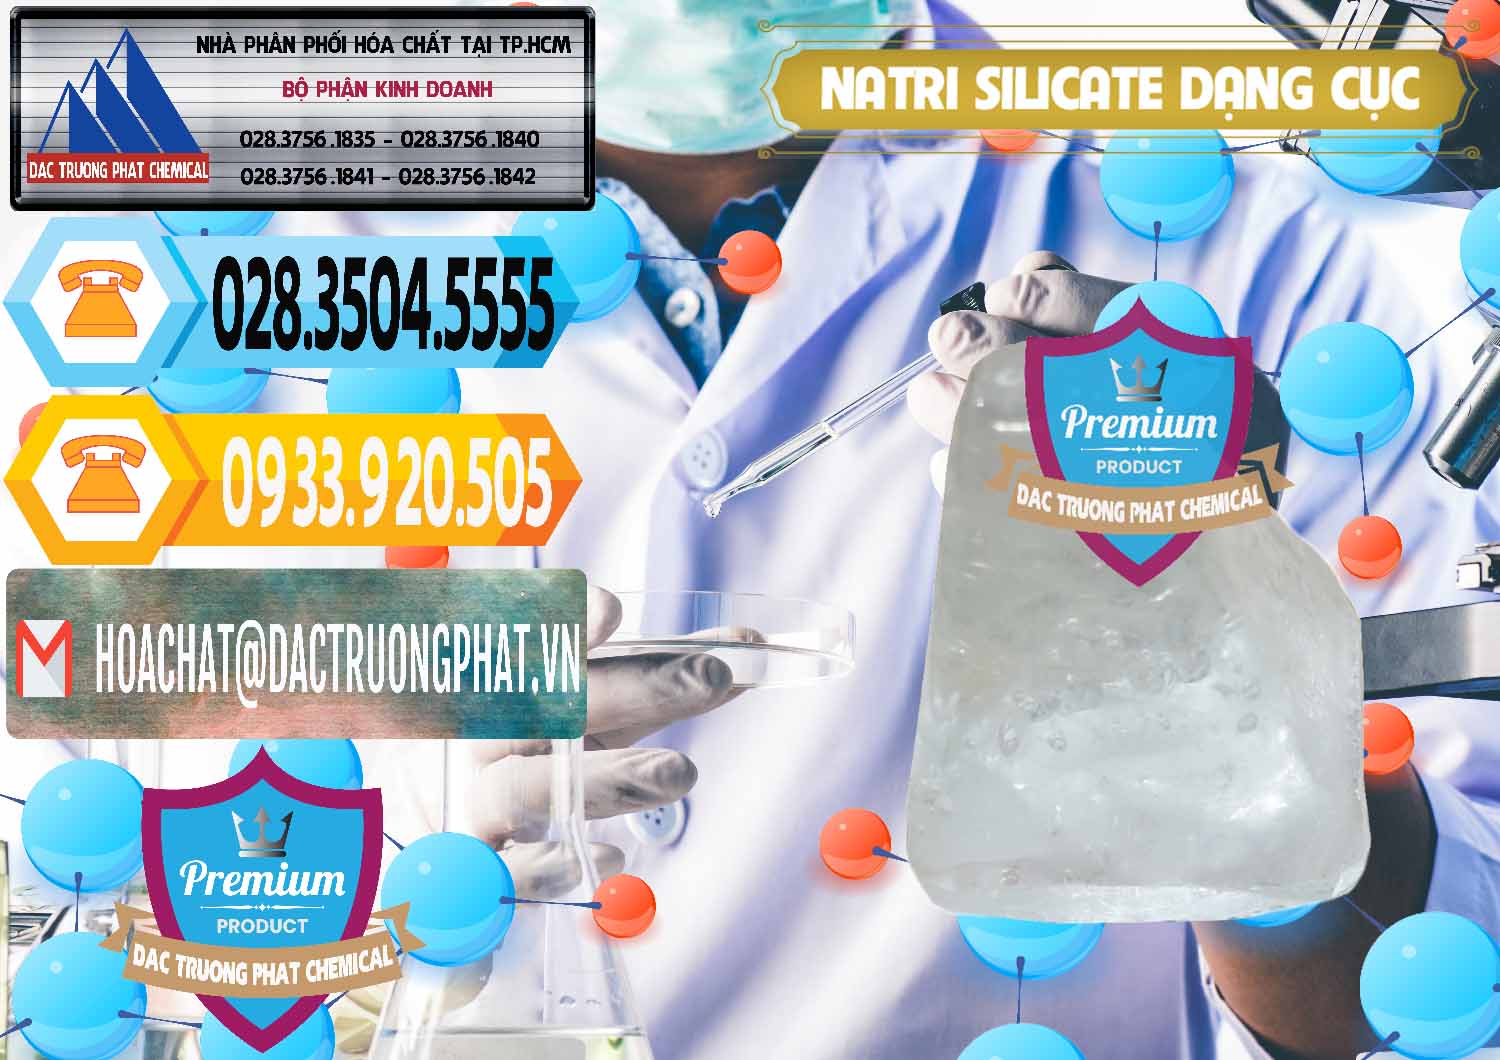 Nơi bán và cung ứng Natri Silicate - Na2SiO3 - Keo Silicate Dạng Cục Ấn Độ India - 0382 - Cty bán và phân phối hóa chất tại TP.HCM - hoachattayrua.net